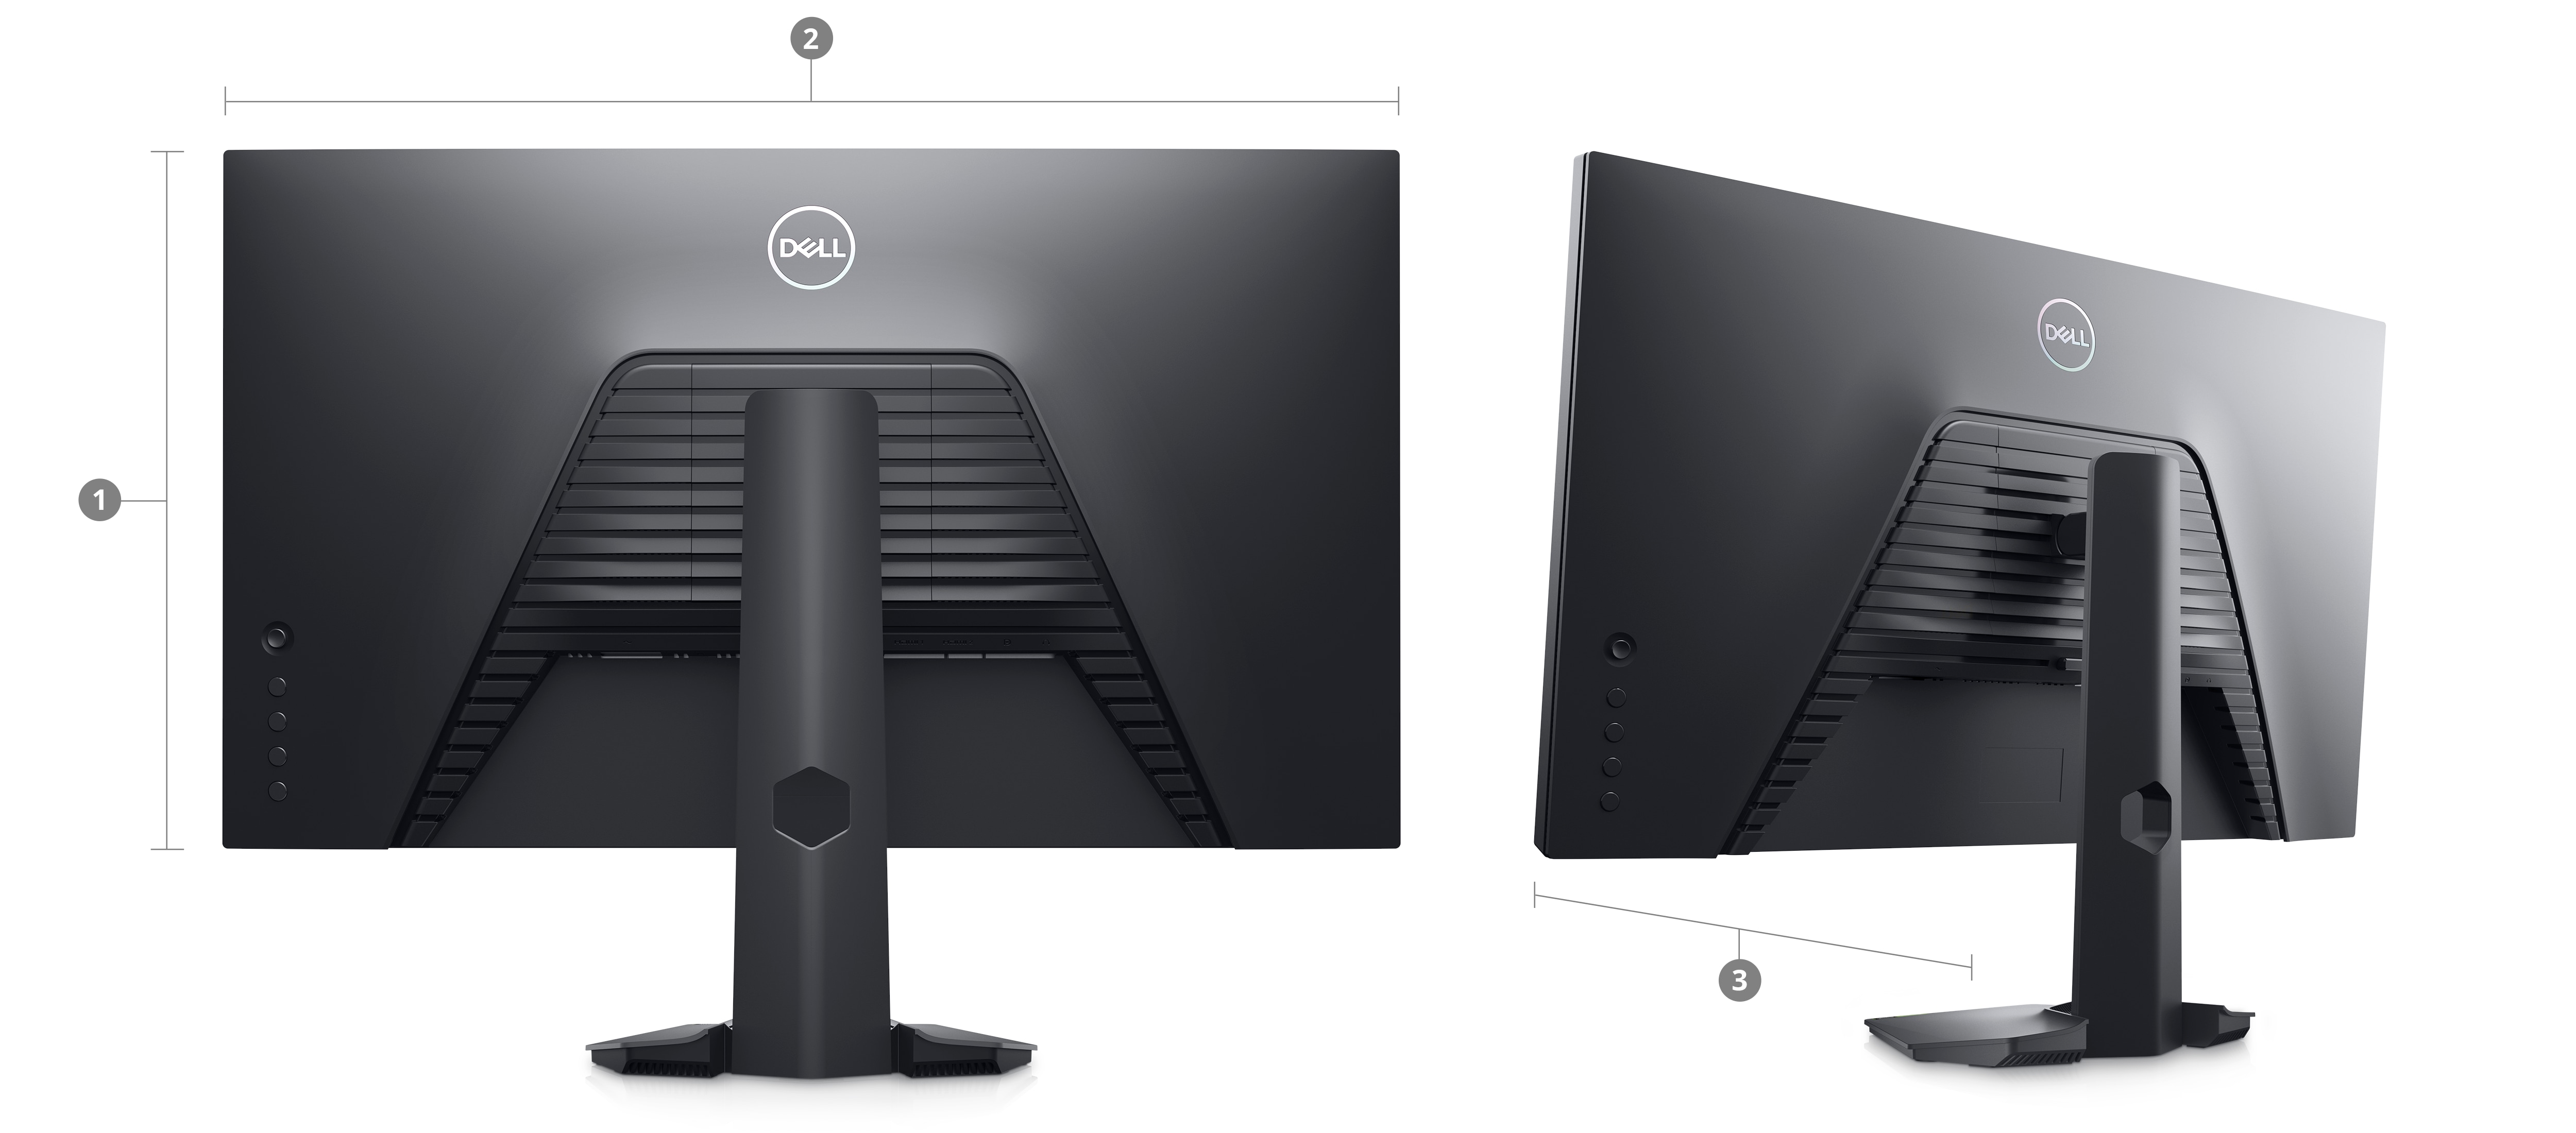 Abbildung der Rückseite von zwei Dell S2722HS Gaming-Monitoren mit Zahlen von 1 bis 3 als Kennzeichnungen für Abmessungen und Gewicht.